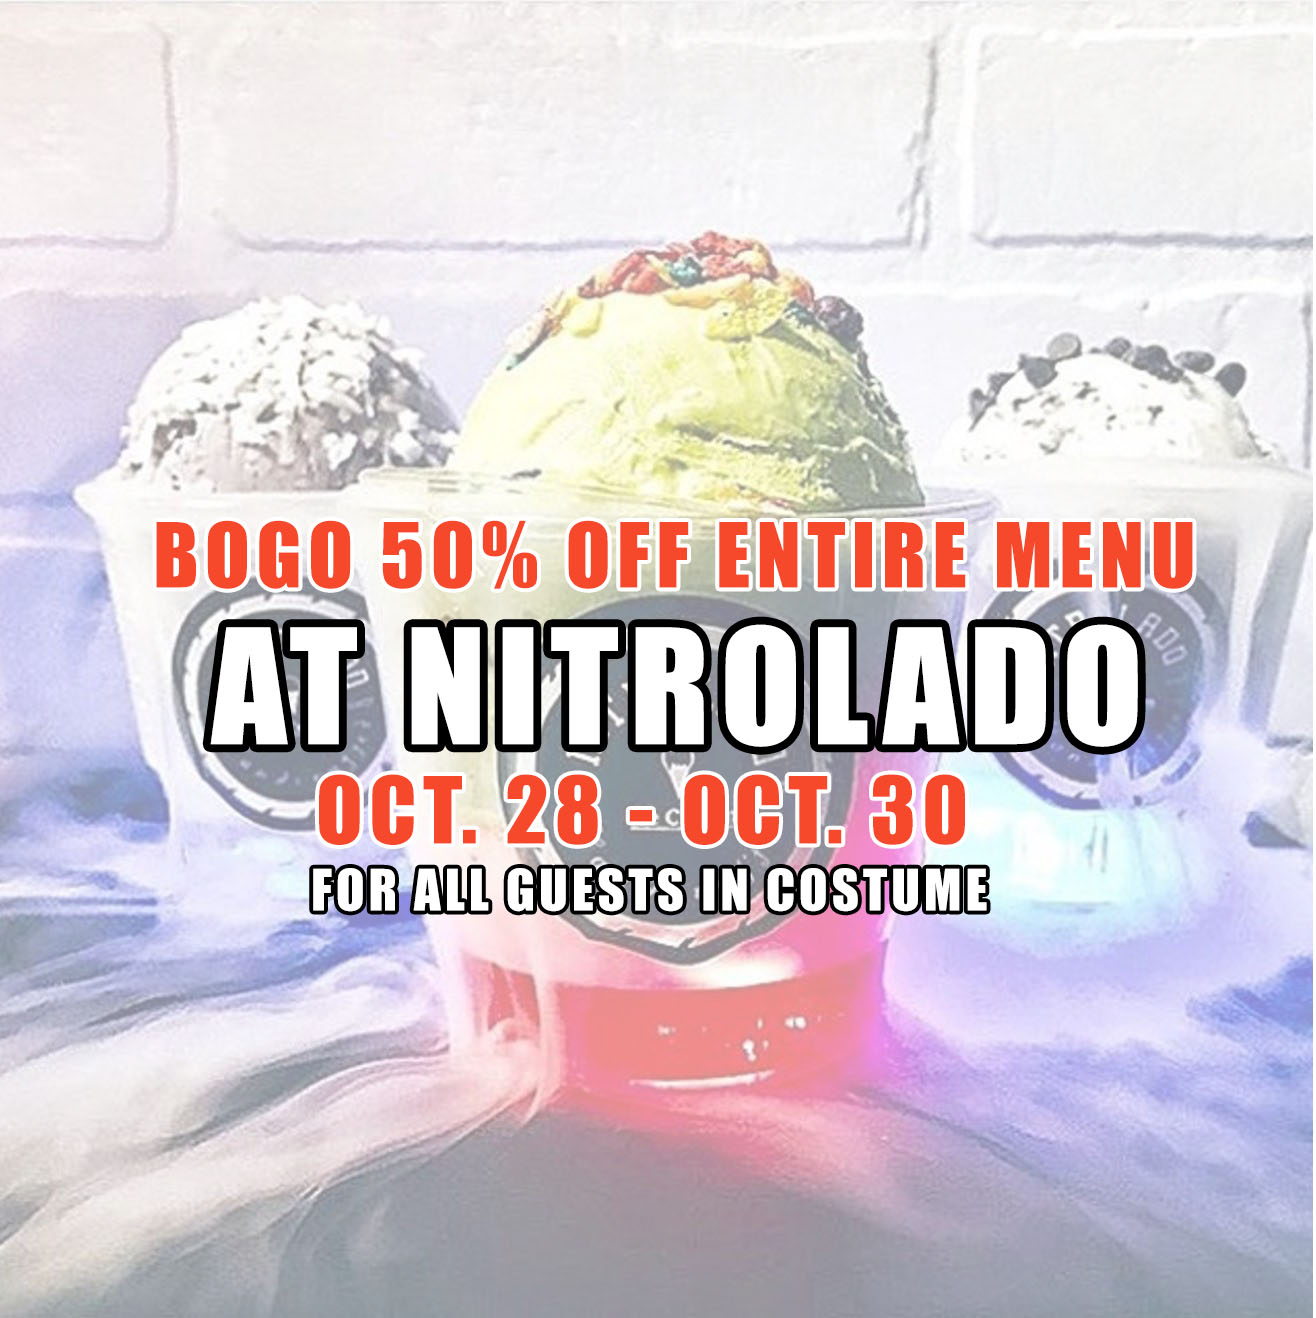 Oct. 28 - 30 | Dress Up and Receive BOGO Half Off Entire Menu @ Nitrolado - Garden Grove